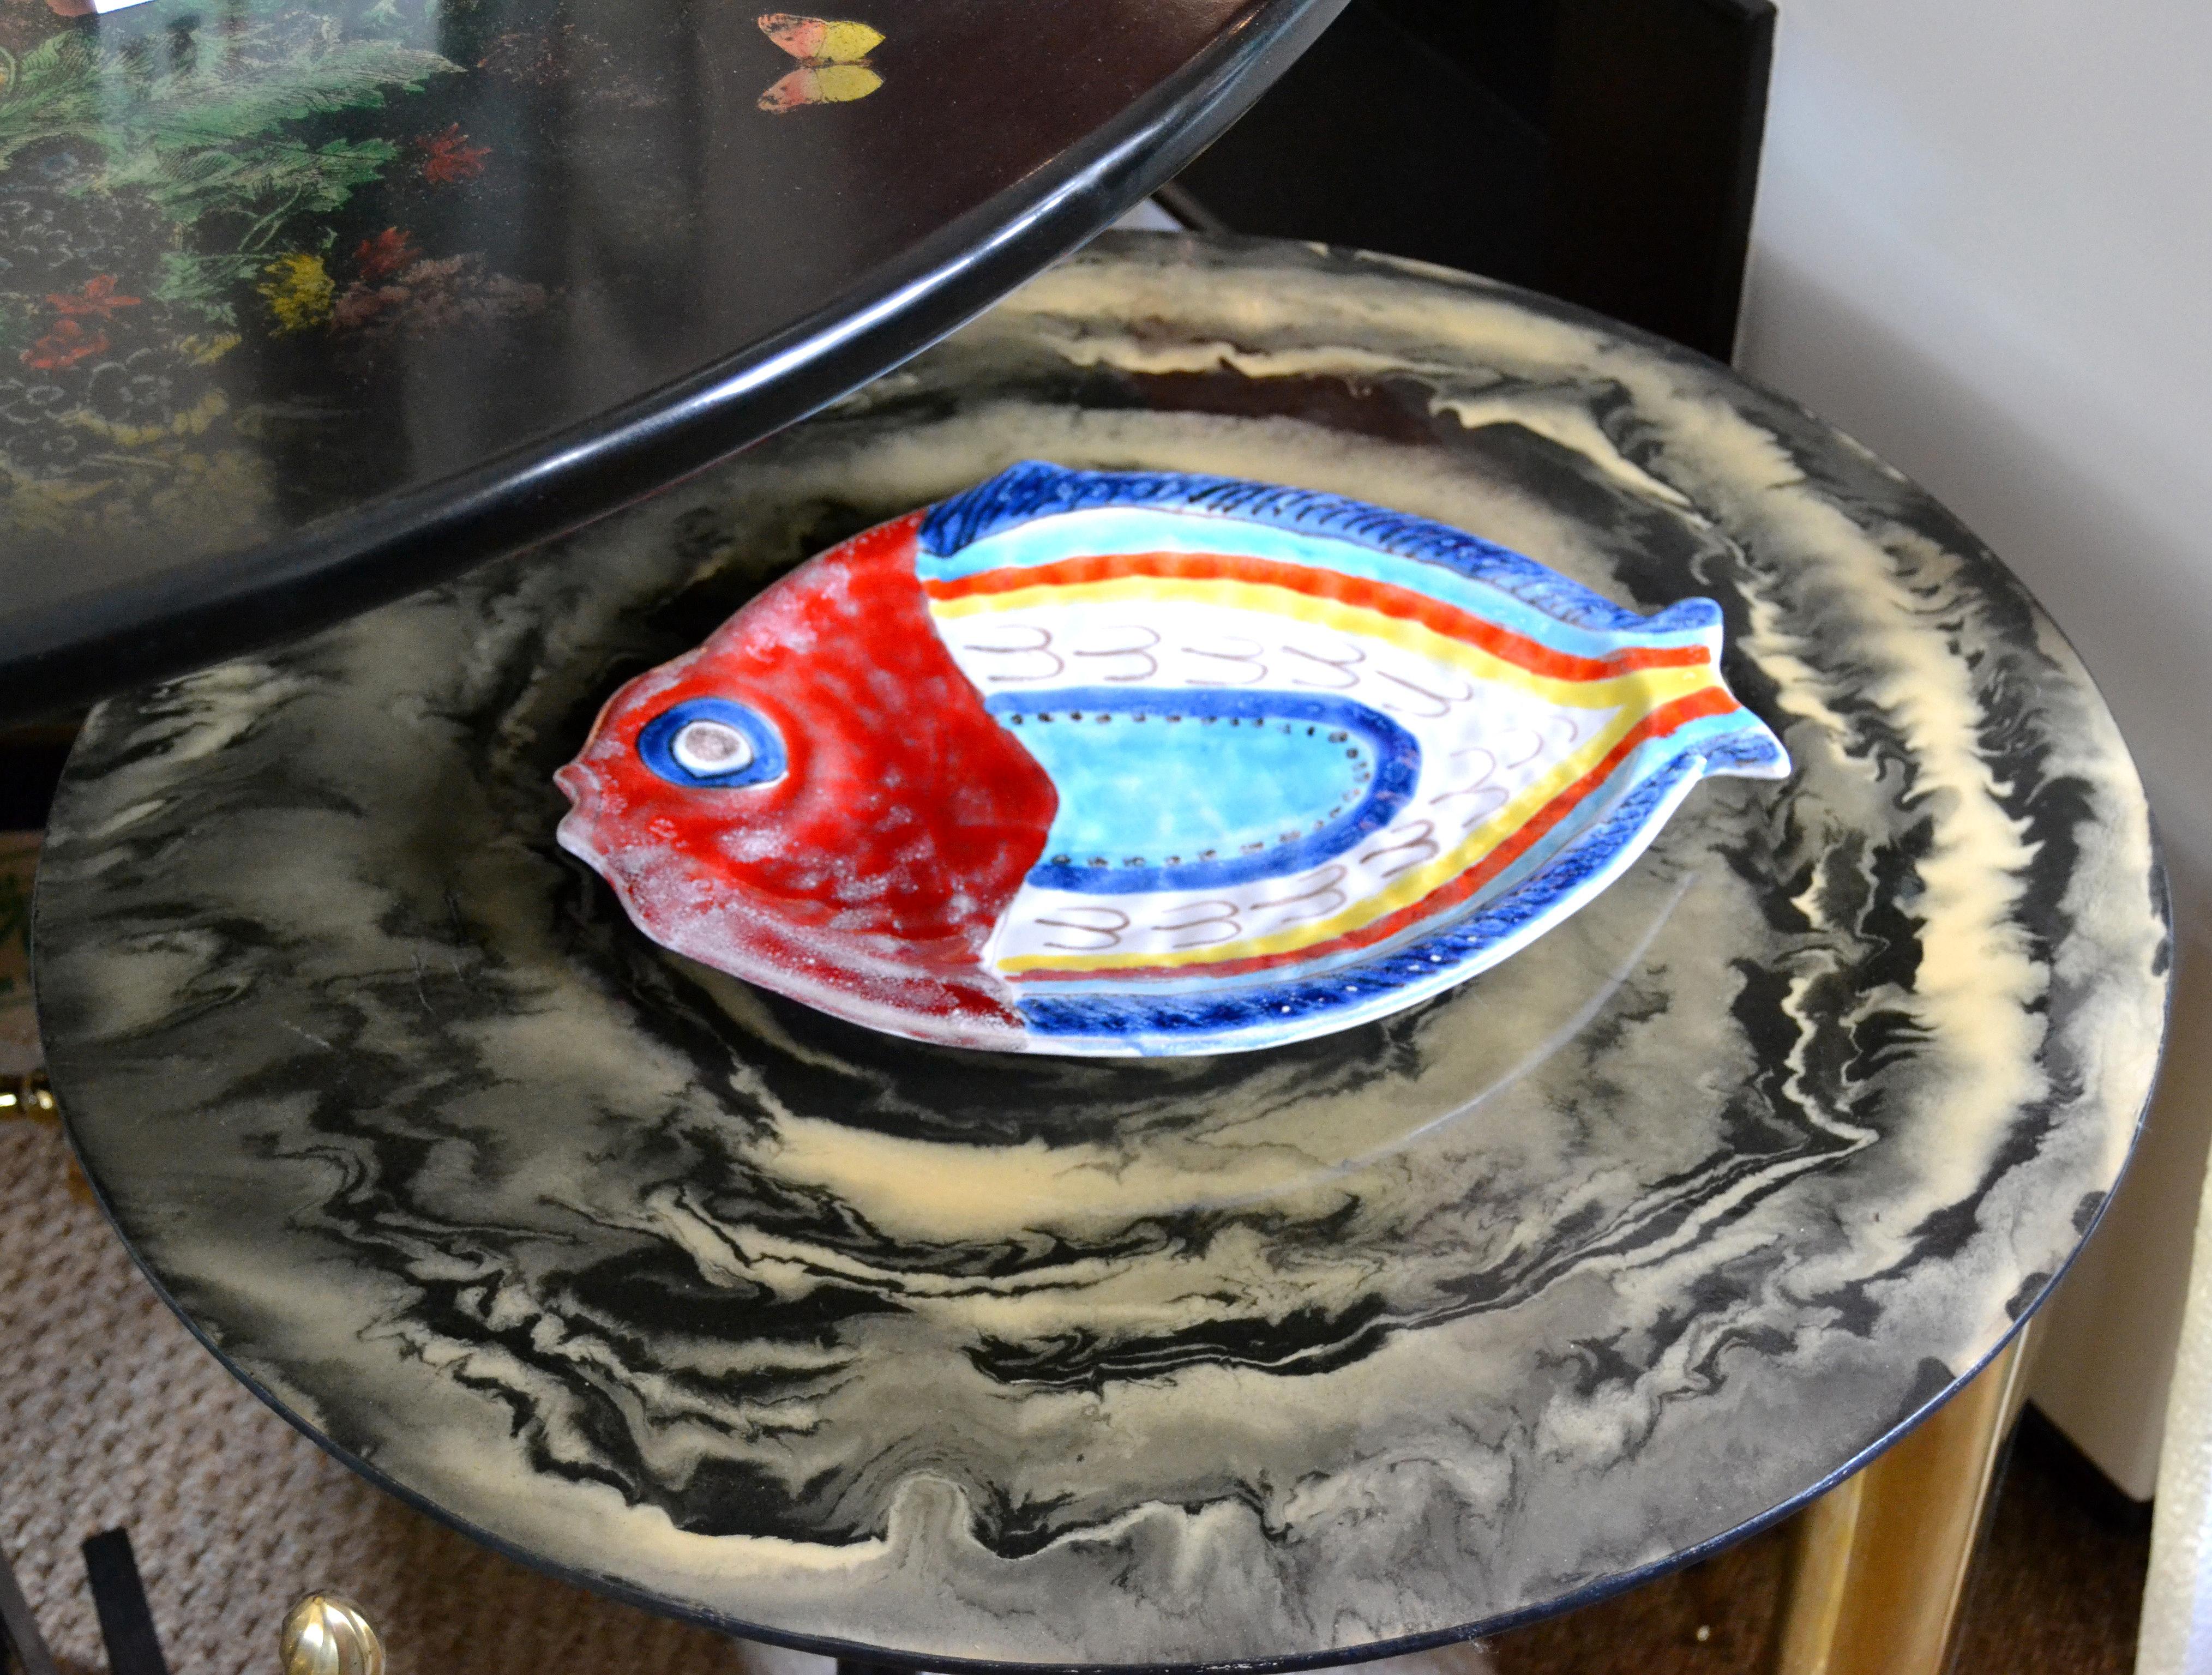 Poterie originale italienne Giovanni DeSimone peinte à la main, plat à poisson, assiette de service.
L'assiette est vernissée et très colorée.
Marqué et numéroté sur le dessous, 